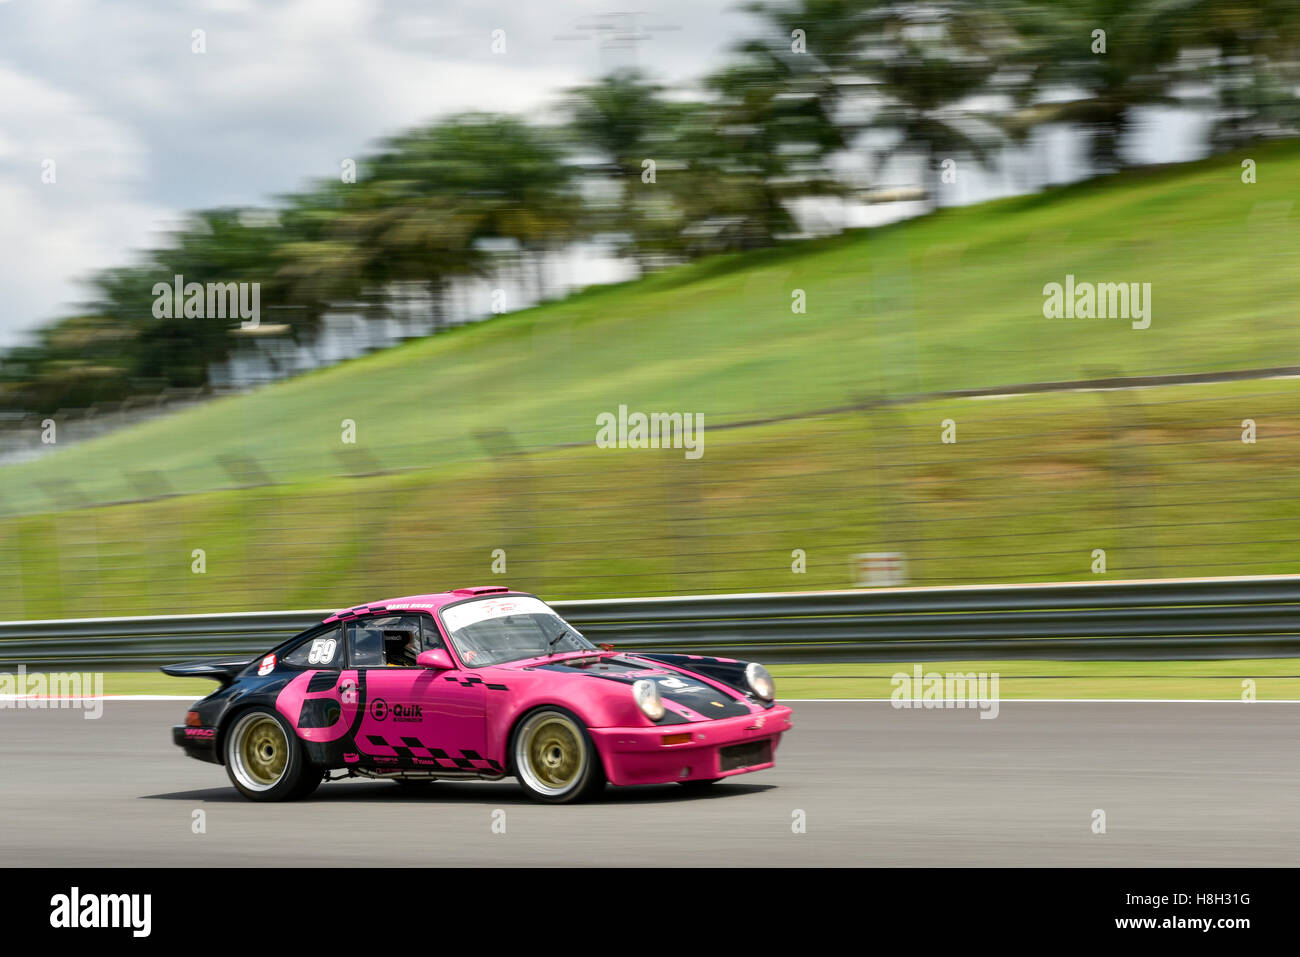 La conduite de l'affaire Bilski Daniel (59) Porsche 911 RSR sur la voie lors de l'Asia Classic Car Défi au circuit Sepang le 12 novembre 2016 à Kuala Lumpur, Malaisie. Banque D'Images